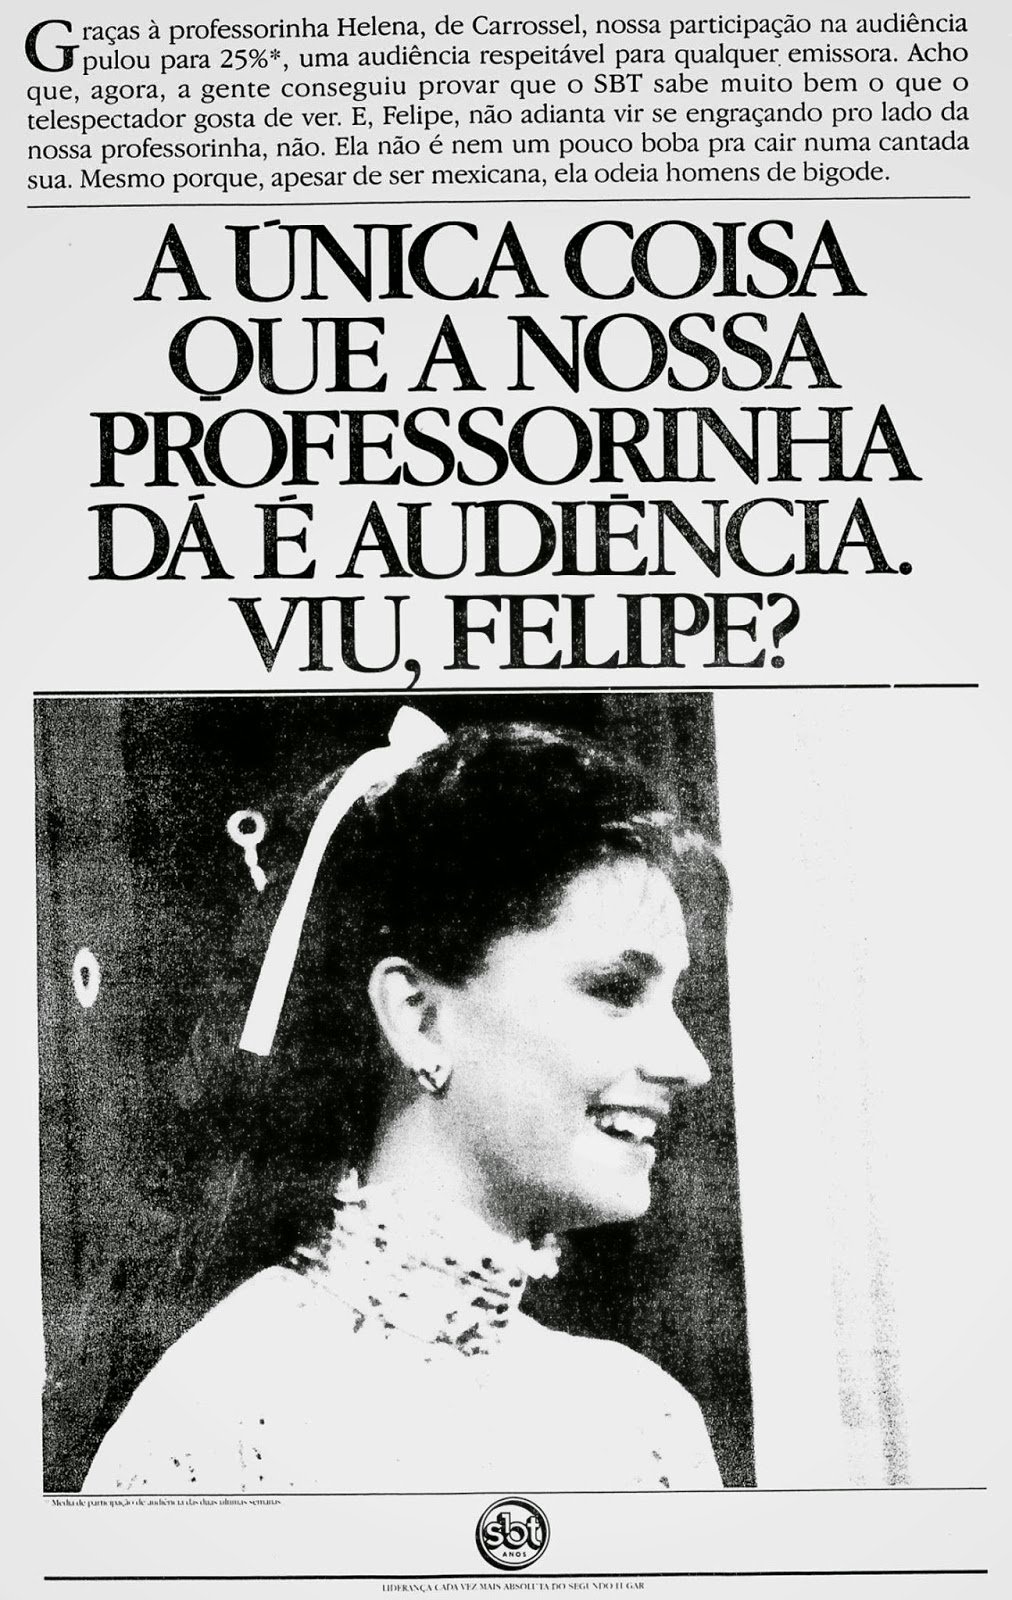 Anúncio do SBT para promover a novela Carrossel, com ataque direto à Rede Globo.